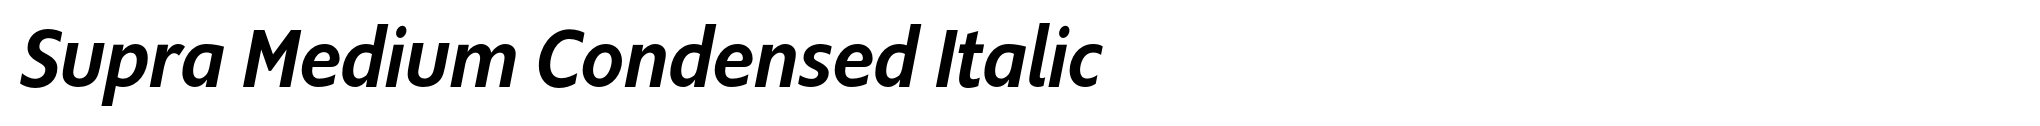 Supra Medium Condensed Italic image